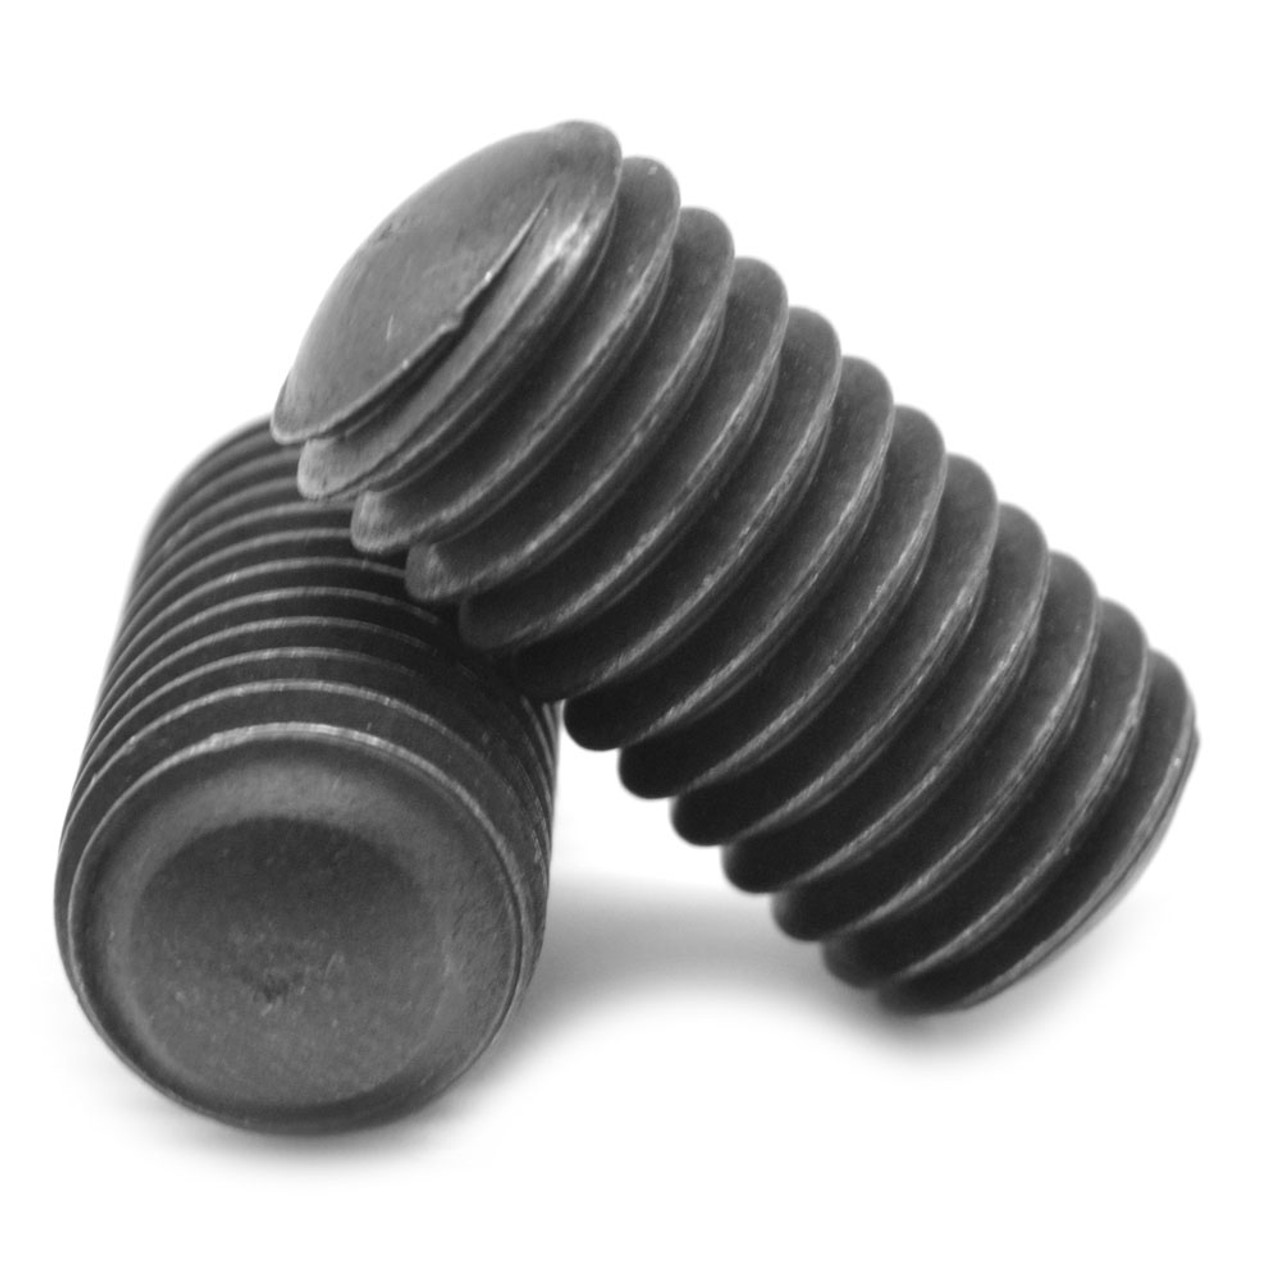 #8-32 x 1" Coarse Thread Socket Set Screw Oval Point Alloy Steel Black Oxide